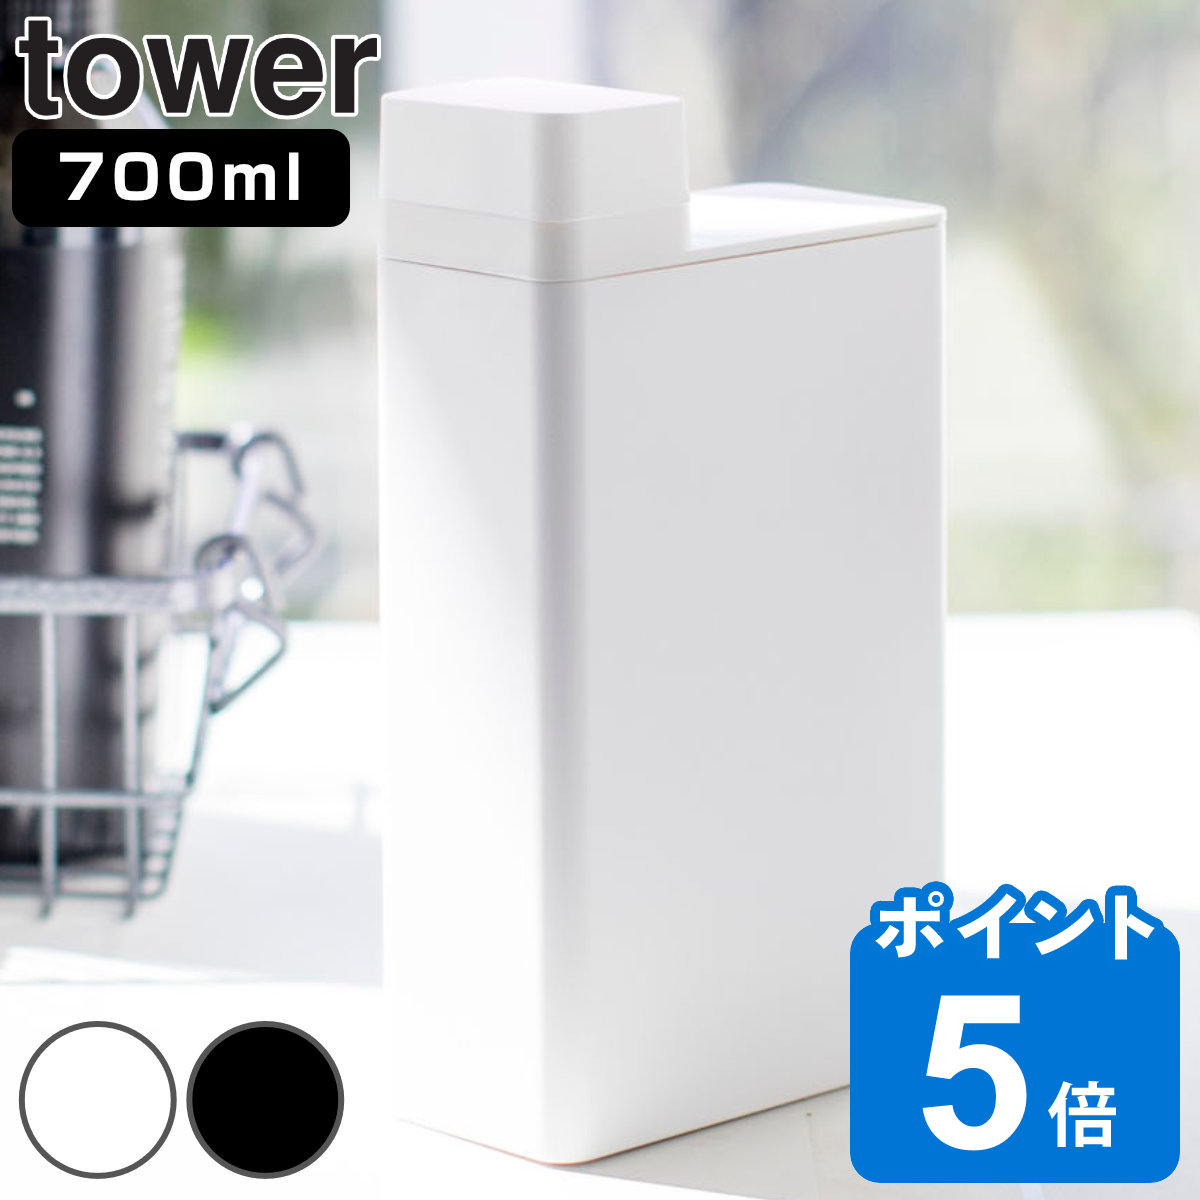 山崎実業 tower 詰め替え用ランドリーボトル タワー